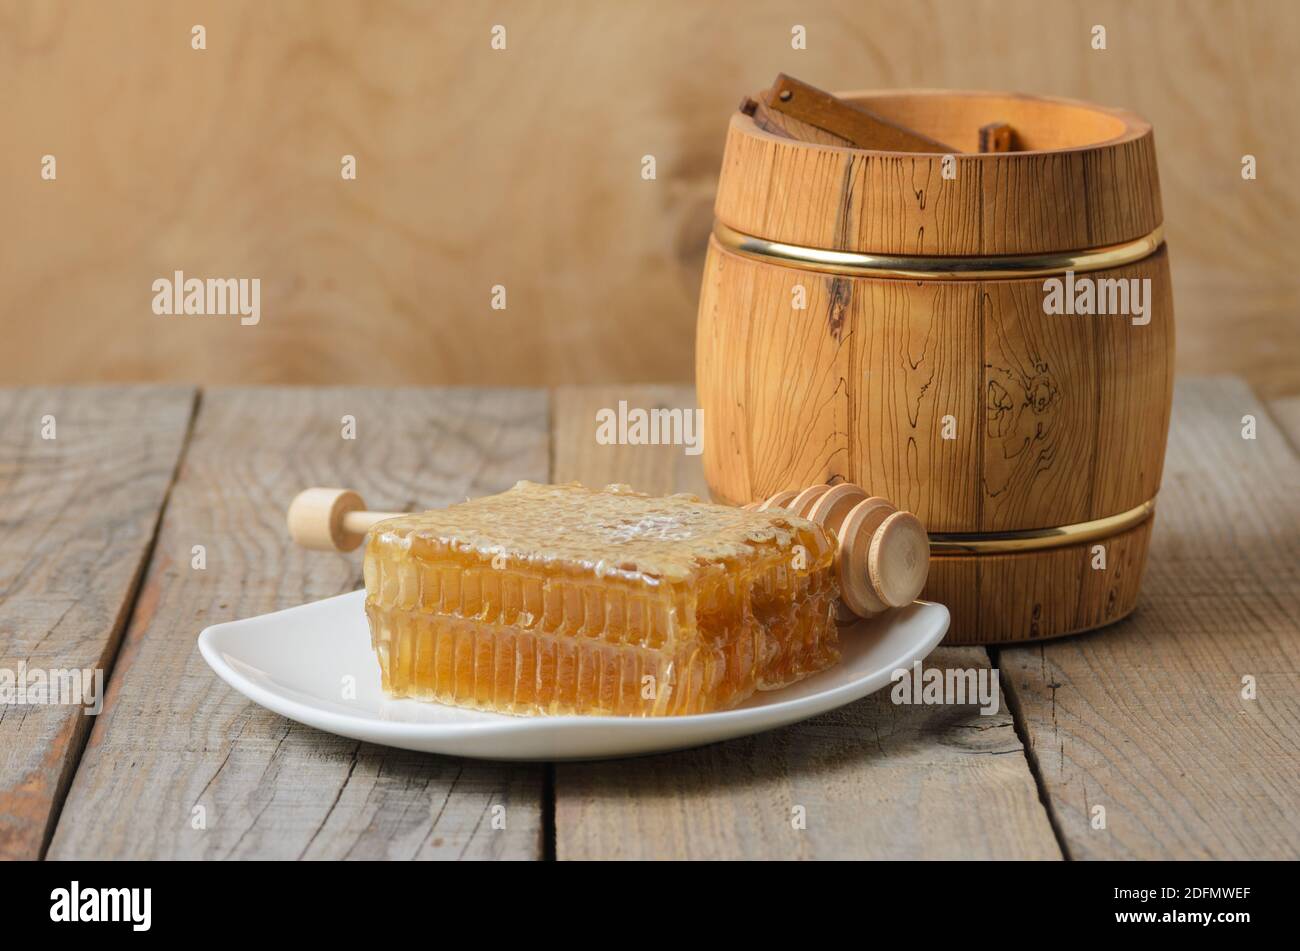 Honig in Honigwabe auf einem weißen Teller mit einem hölzernen Glas und Löffel auf einem rauen hölzernen Hintergrund. Selektiver Fokus. Stockfoto